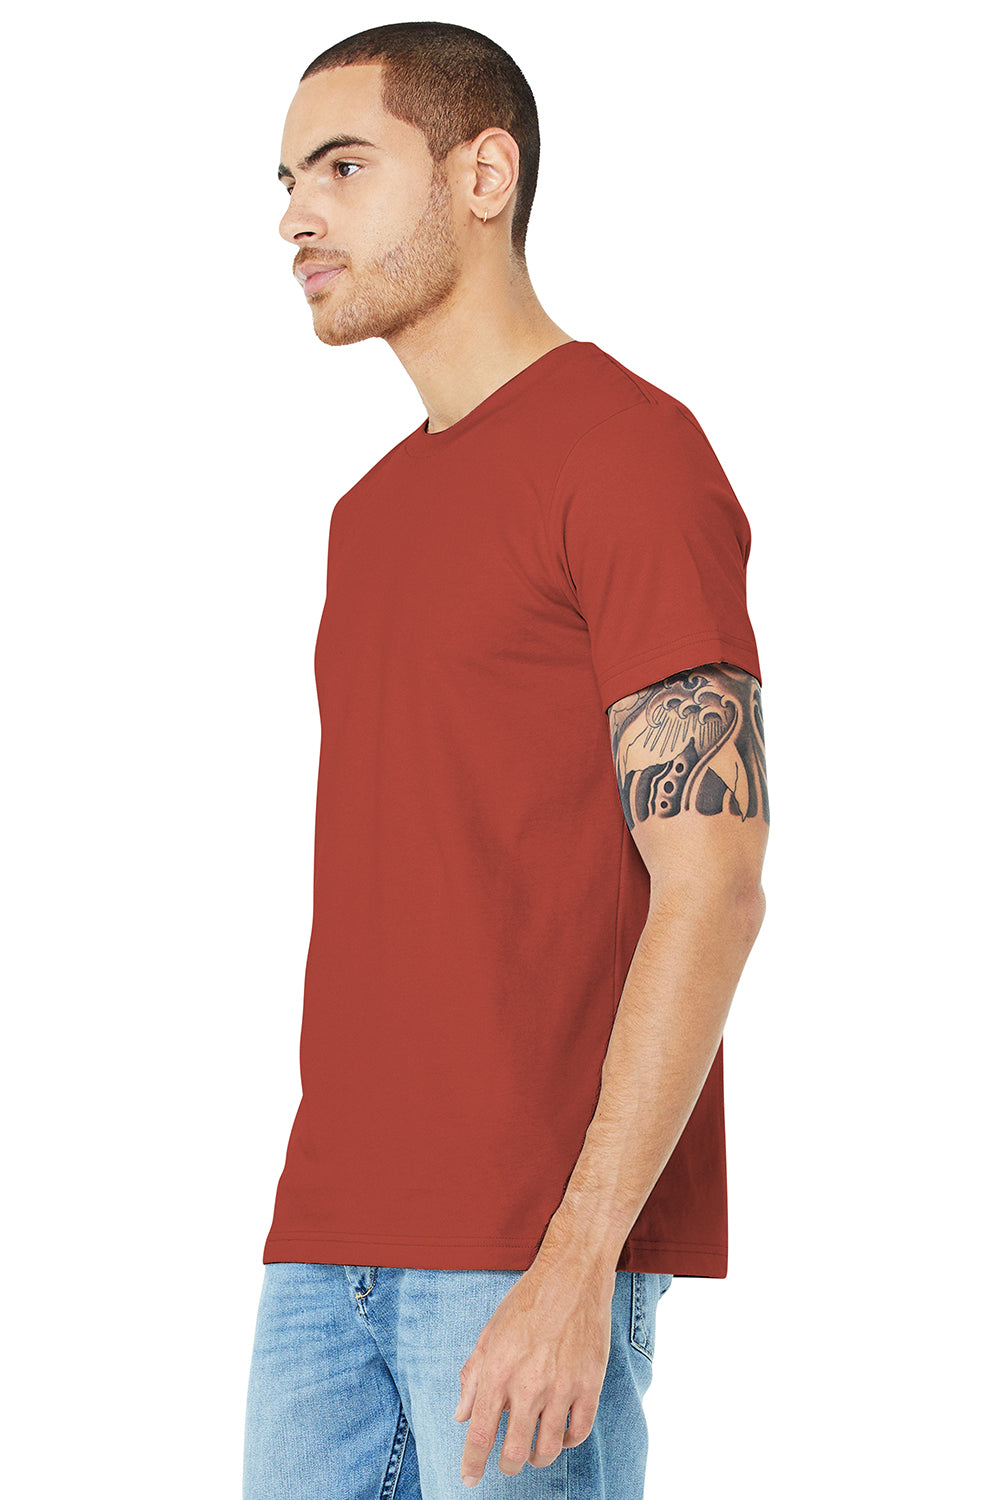 Bella + Canvas BC3001/3001C Mens Jersey Short Sleeve Crewneck T-Shirt Rust Red Model 3Q